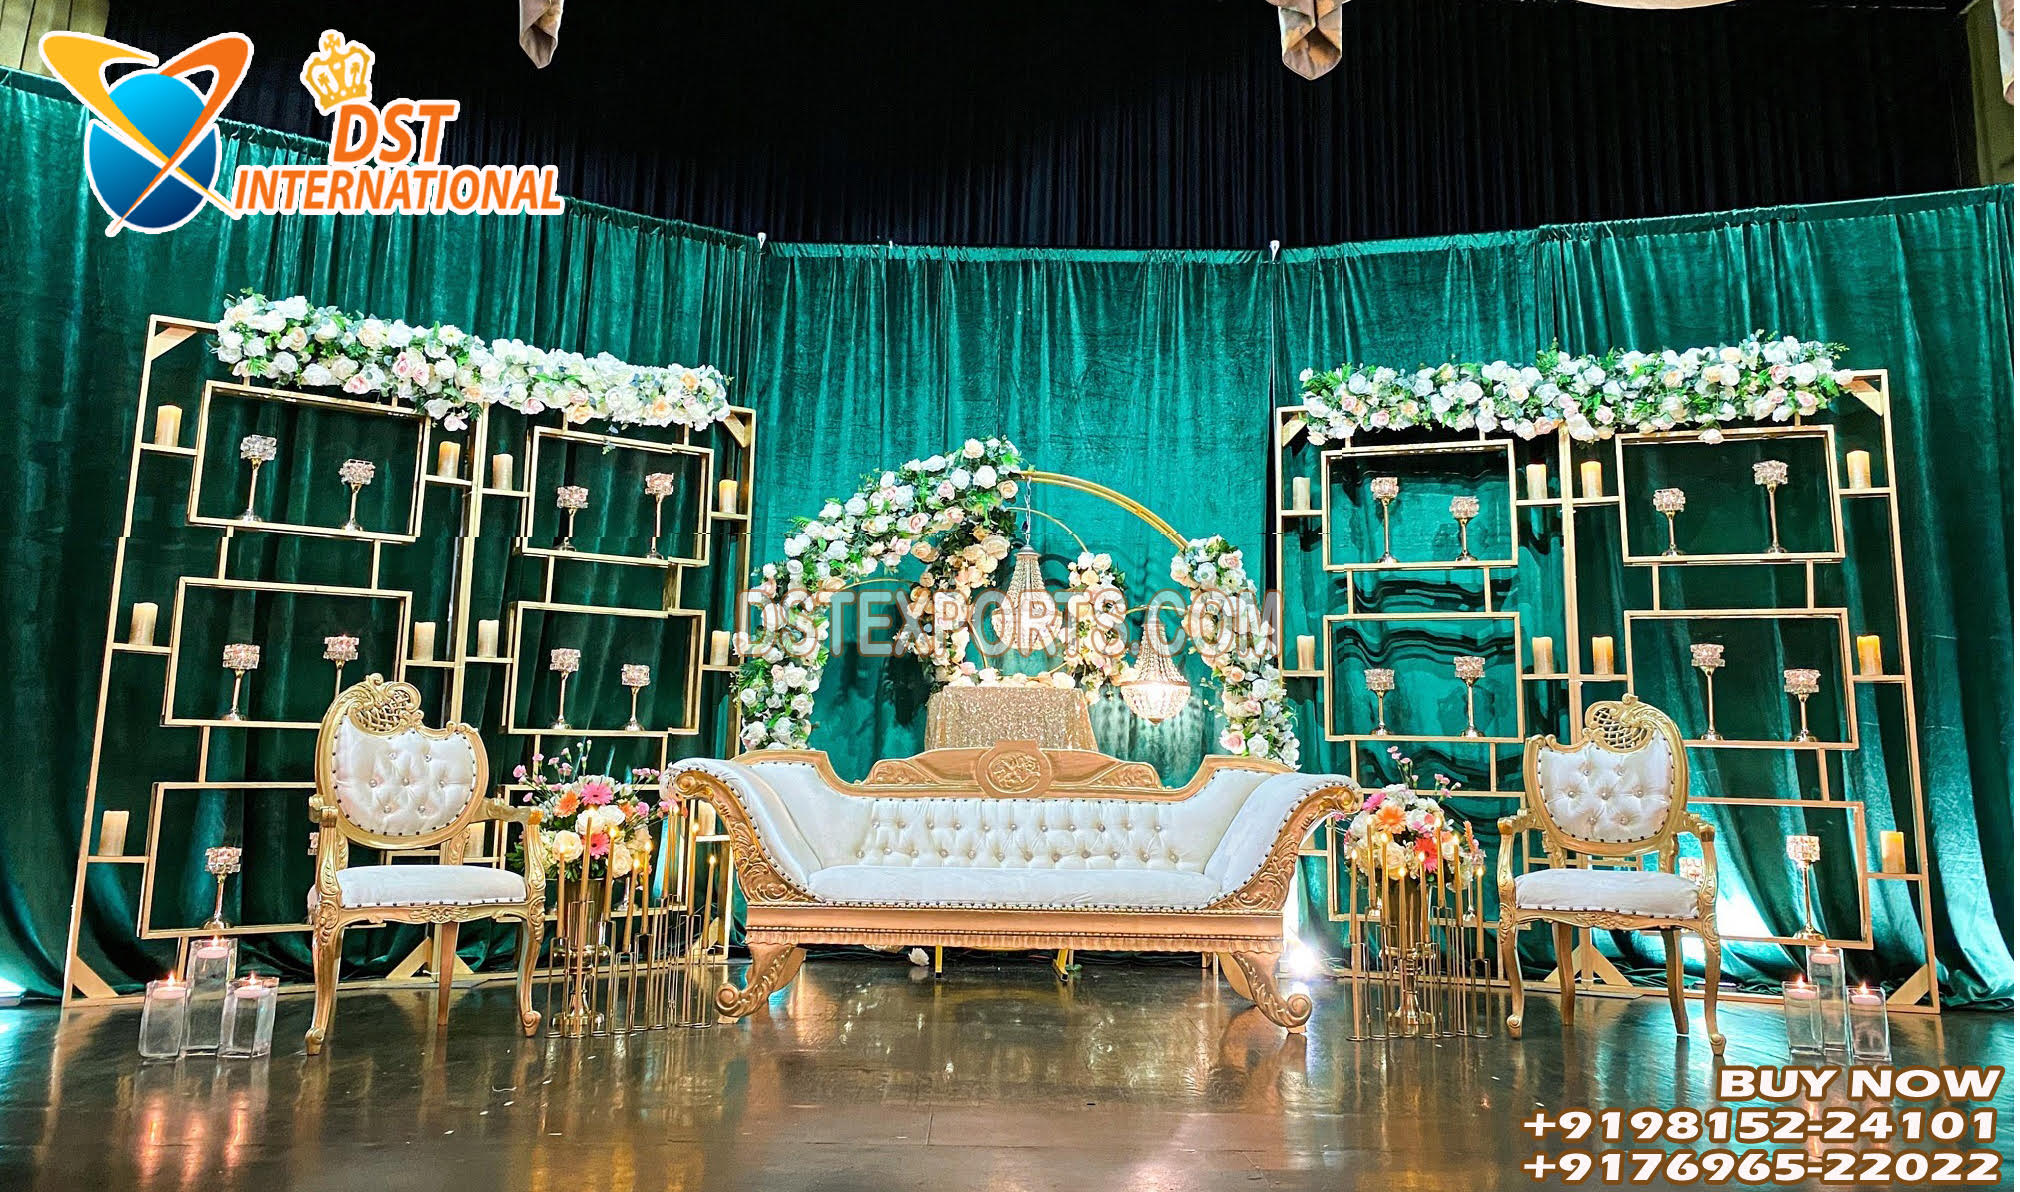 Stylish Candlelit Box For Wedding Reception Stage